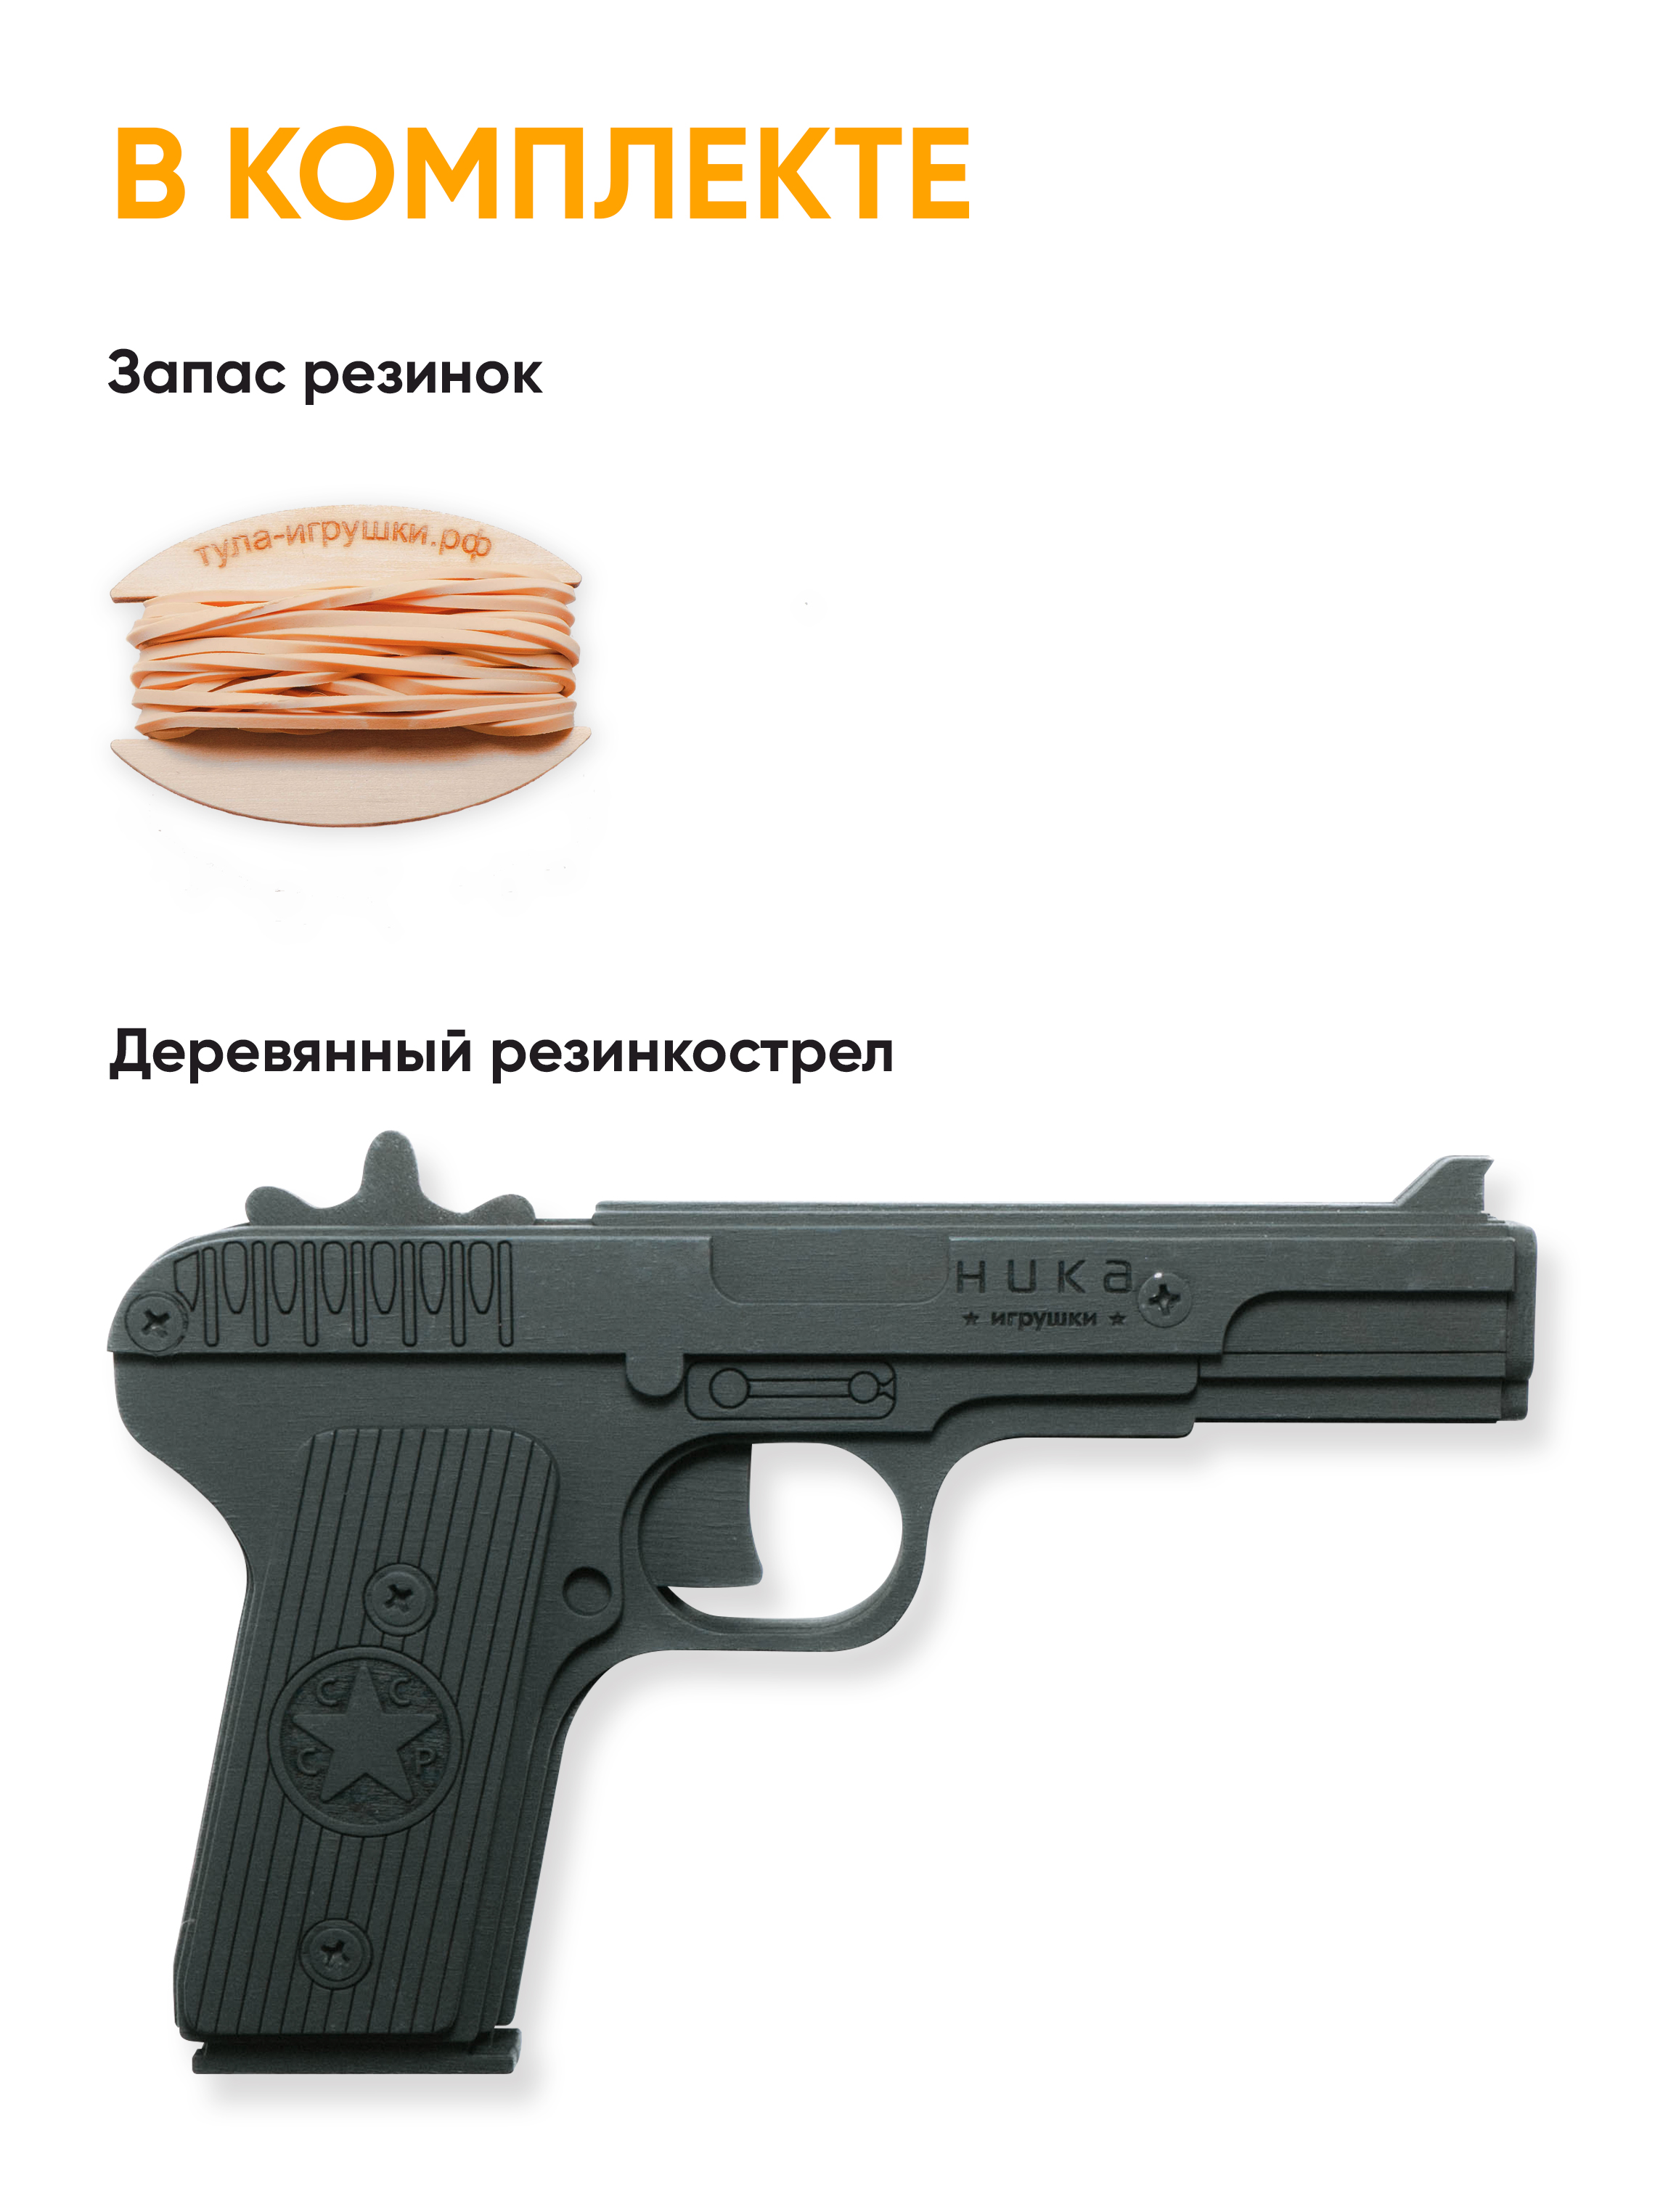 Пистолет игрушечный ТТ НИКА игрушки Резинкострел - фото 2